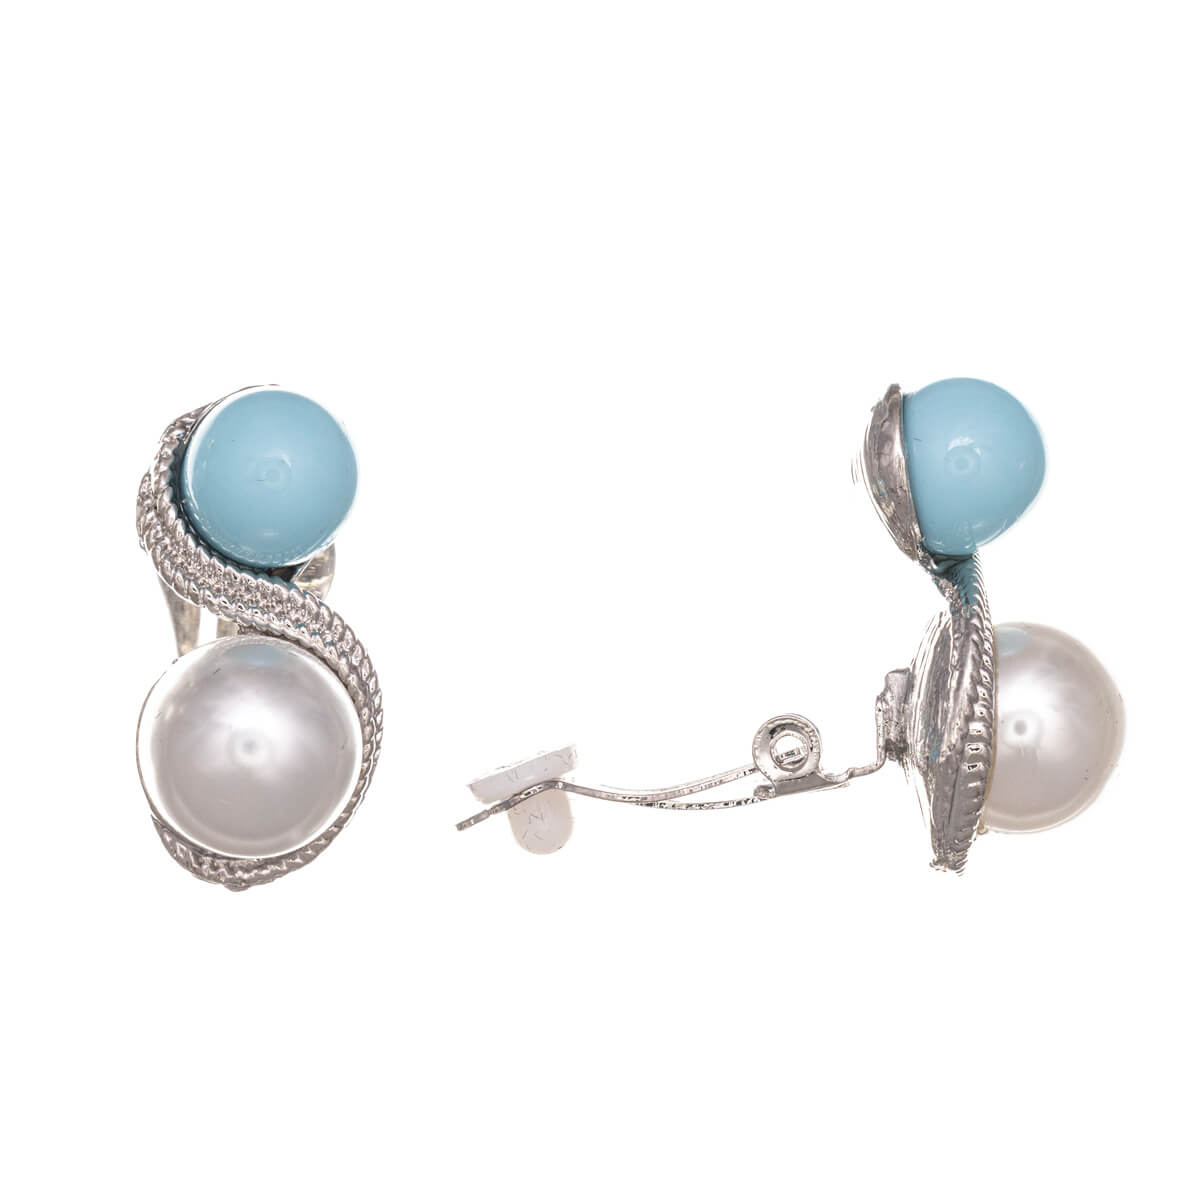 Double pearl clip earrings